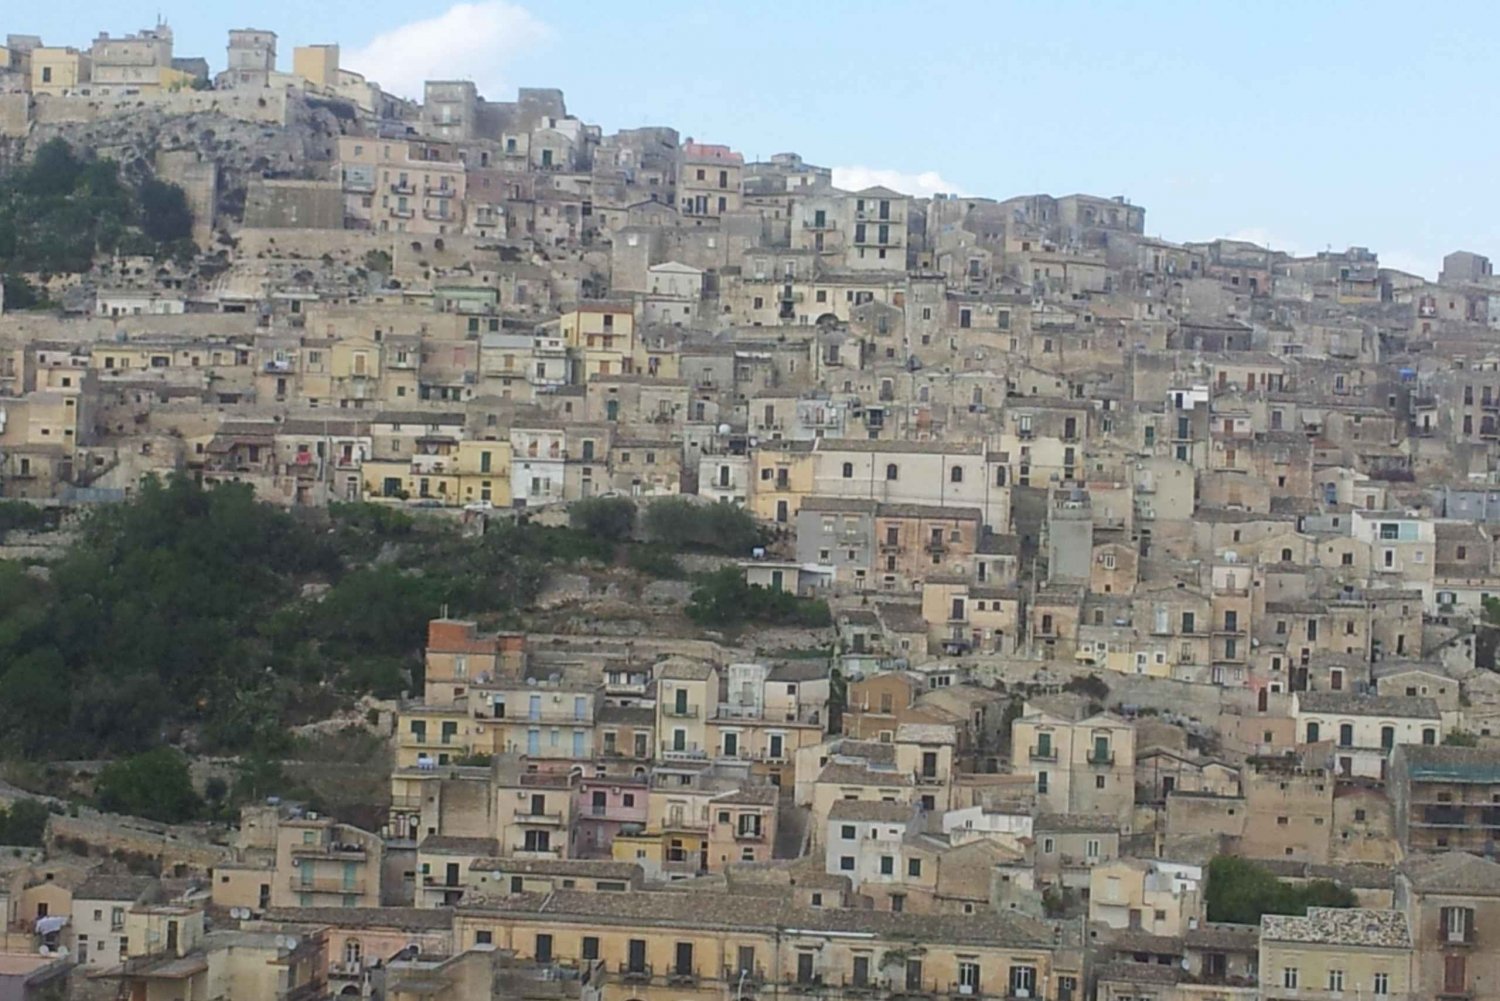 Noto, Modica og Ragusa: Den barokke tur fra Catania